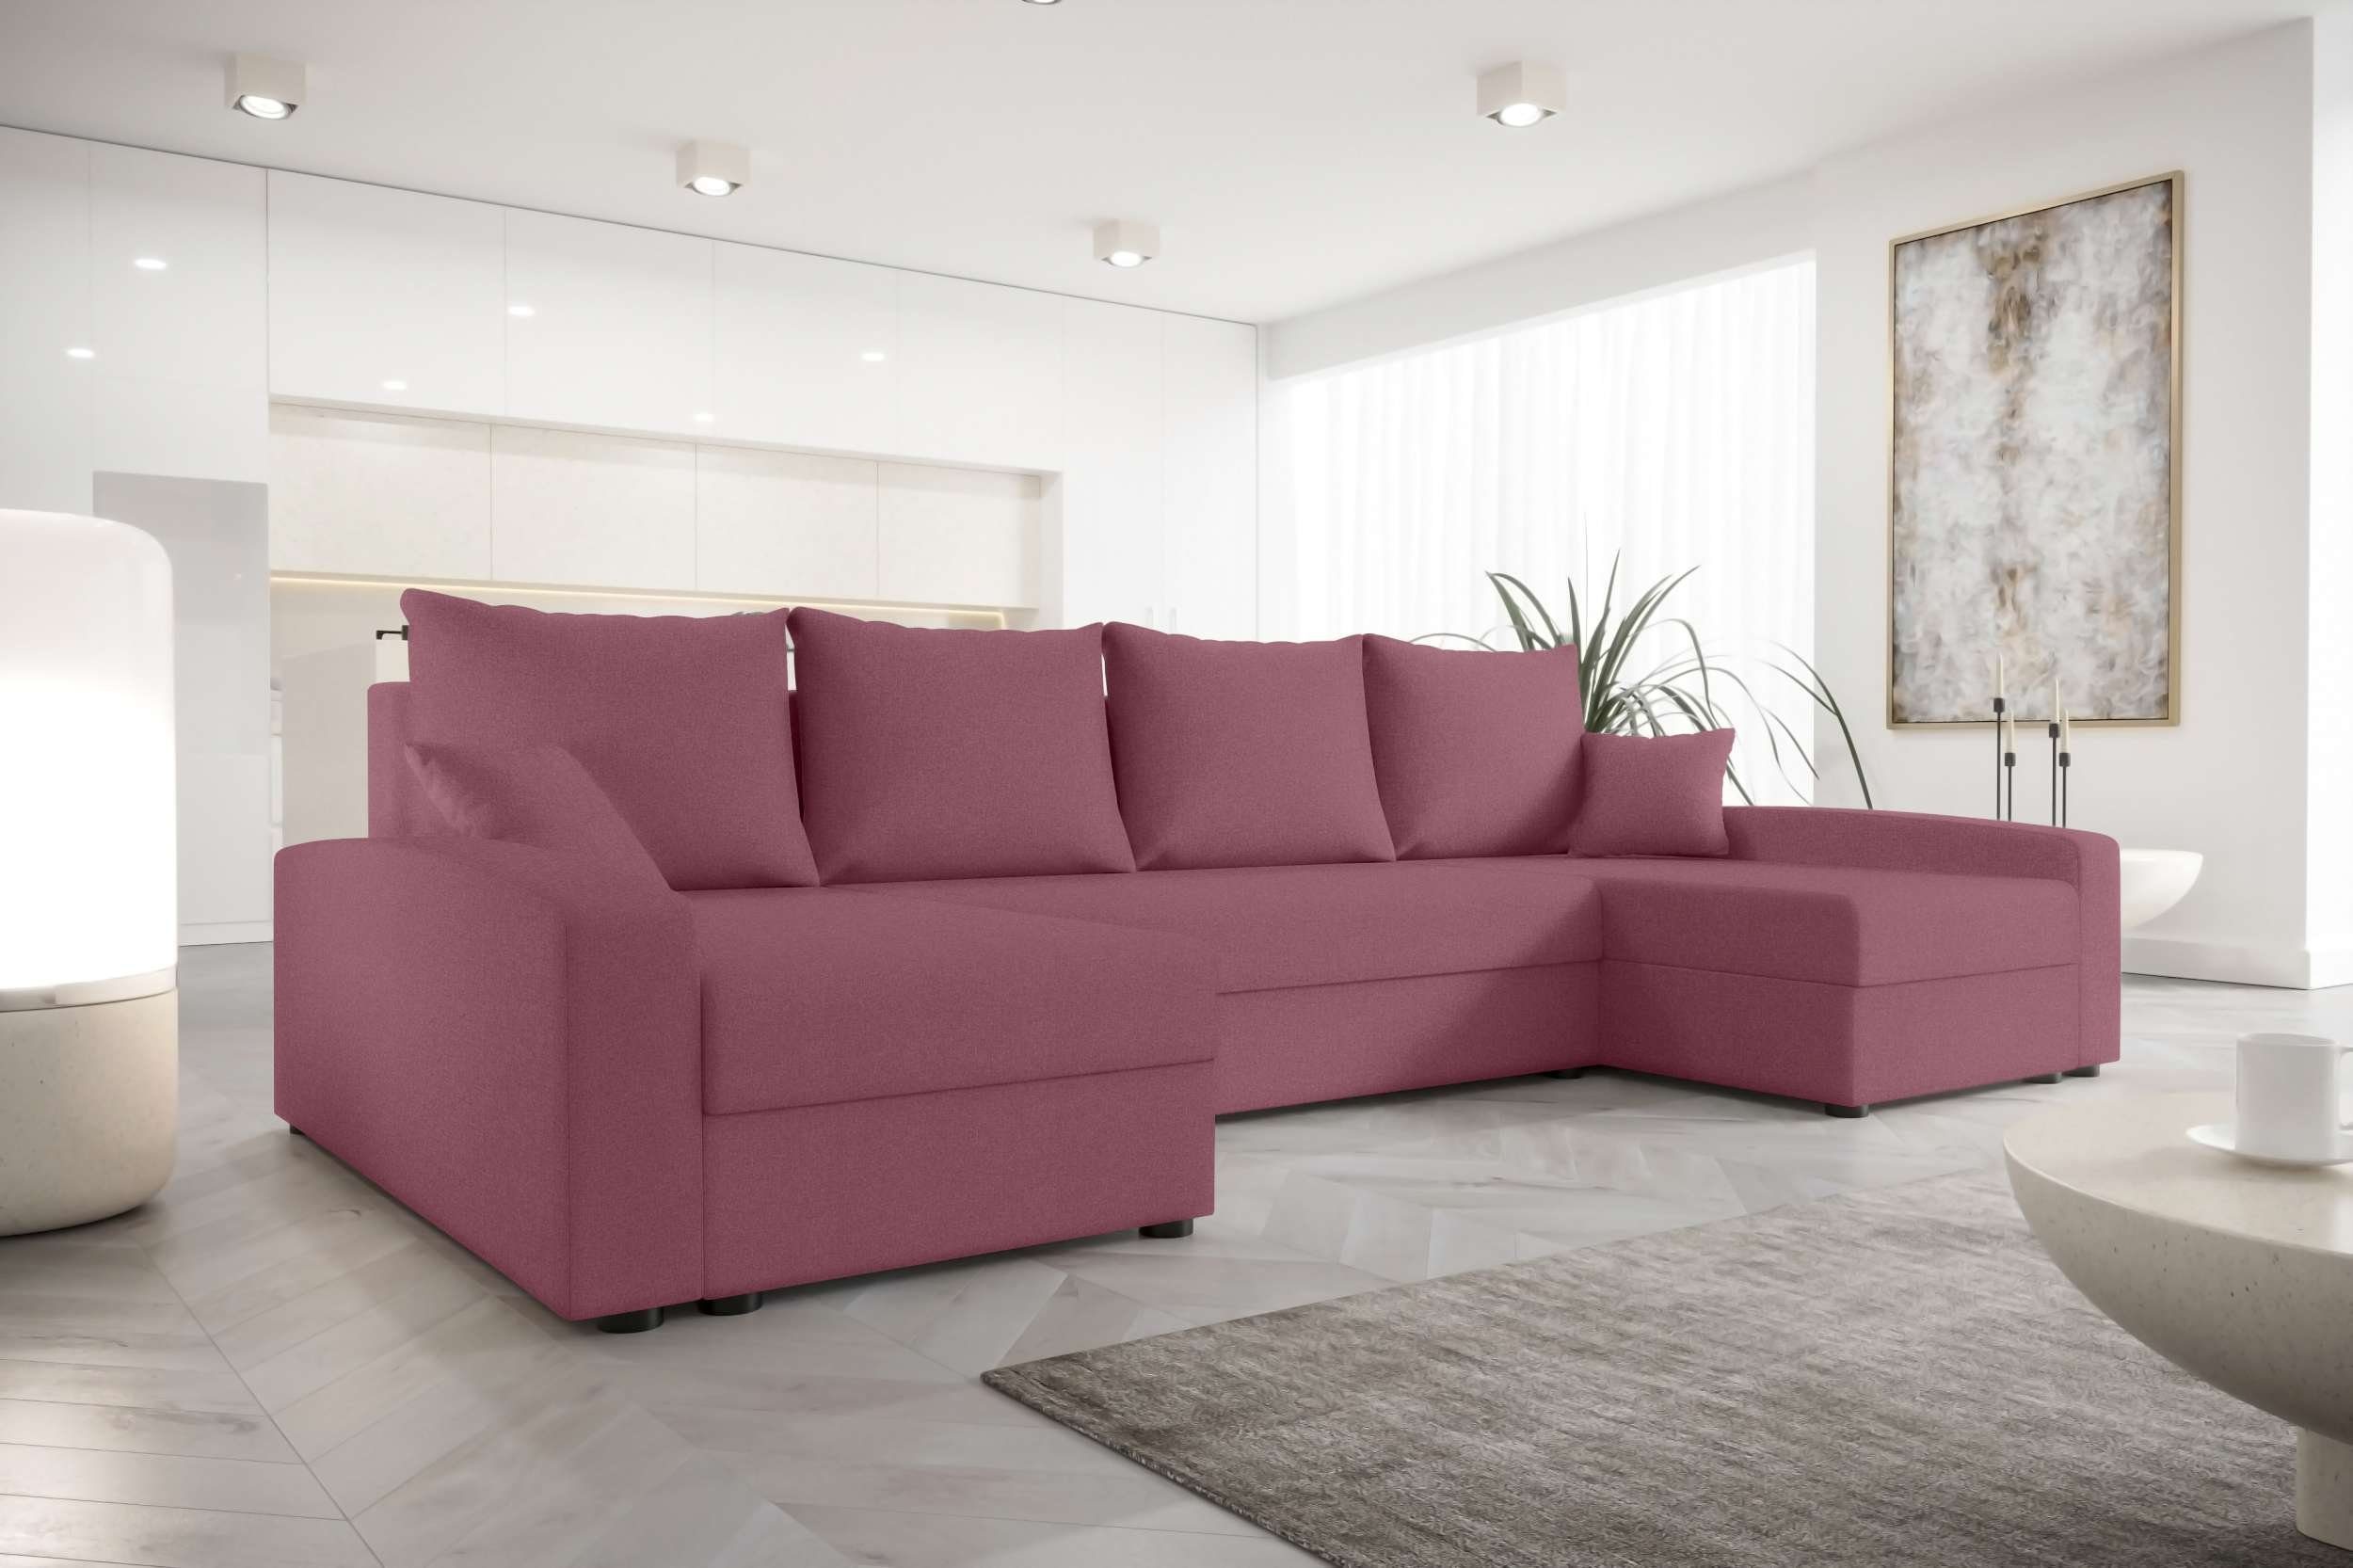 Bettfunktion, mit Wohnlandschaft mit Bettkasten, Sitzkomfort, Modern Eckcouch, Stylefy Sofa, Addison, U-Form, Design